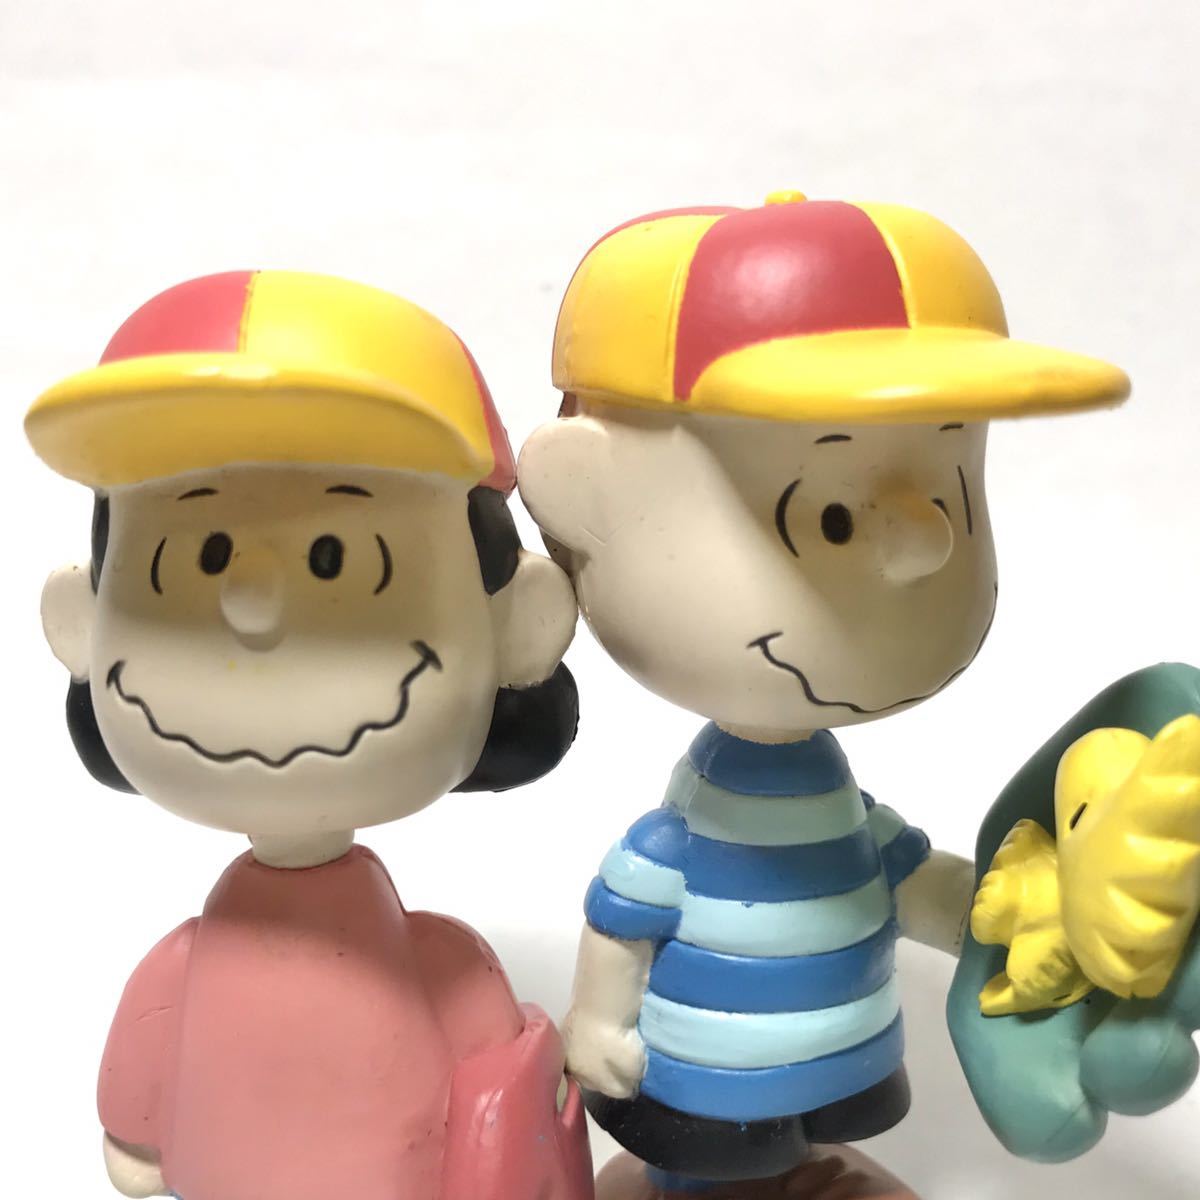 Peanuts チャーリーブラウン ルーシー 7 ミニフィギュア ゴム人形 セット スヌーピー Snoopy ピーナッツ スヌーピー 売買されたオークション情報 Yahooの商品情報をアーカイブ公開 オークファン Aucfan Com